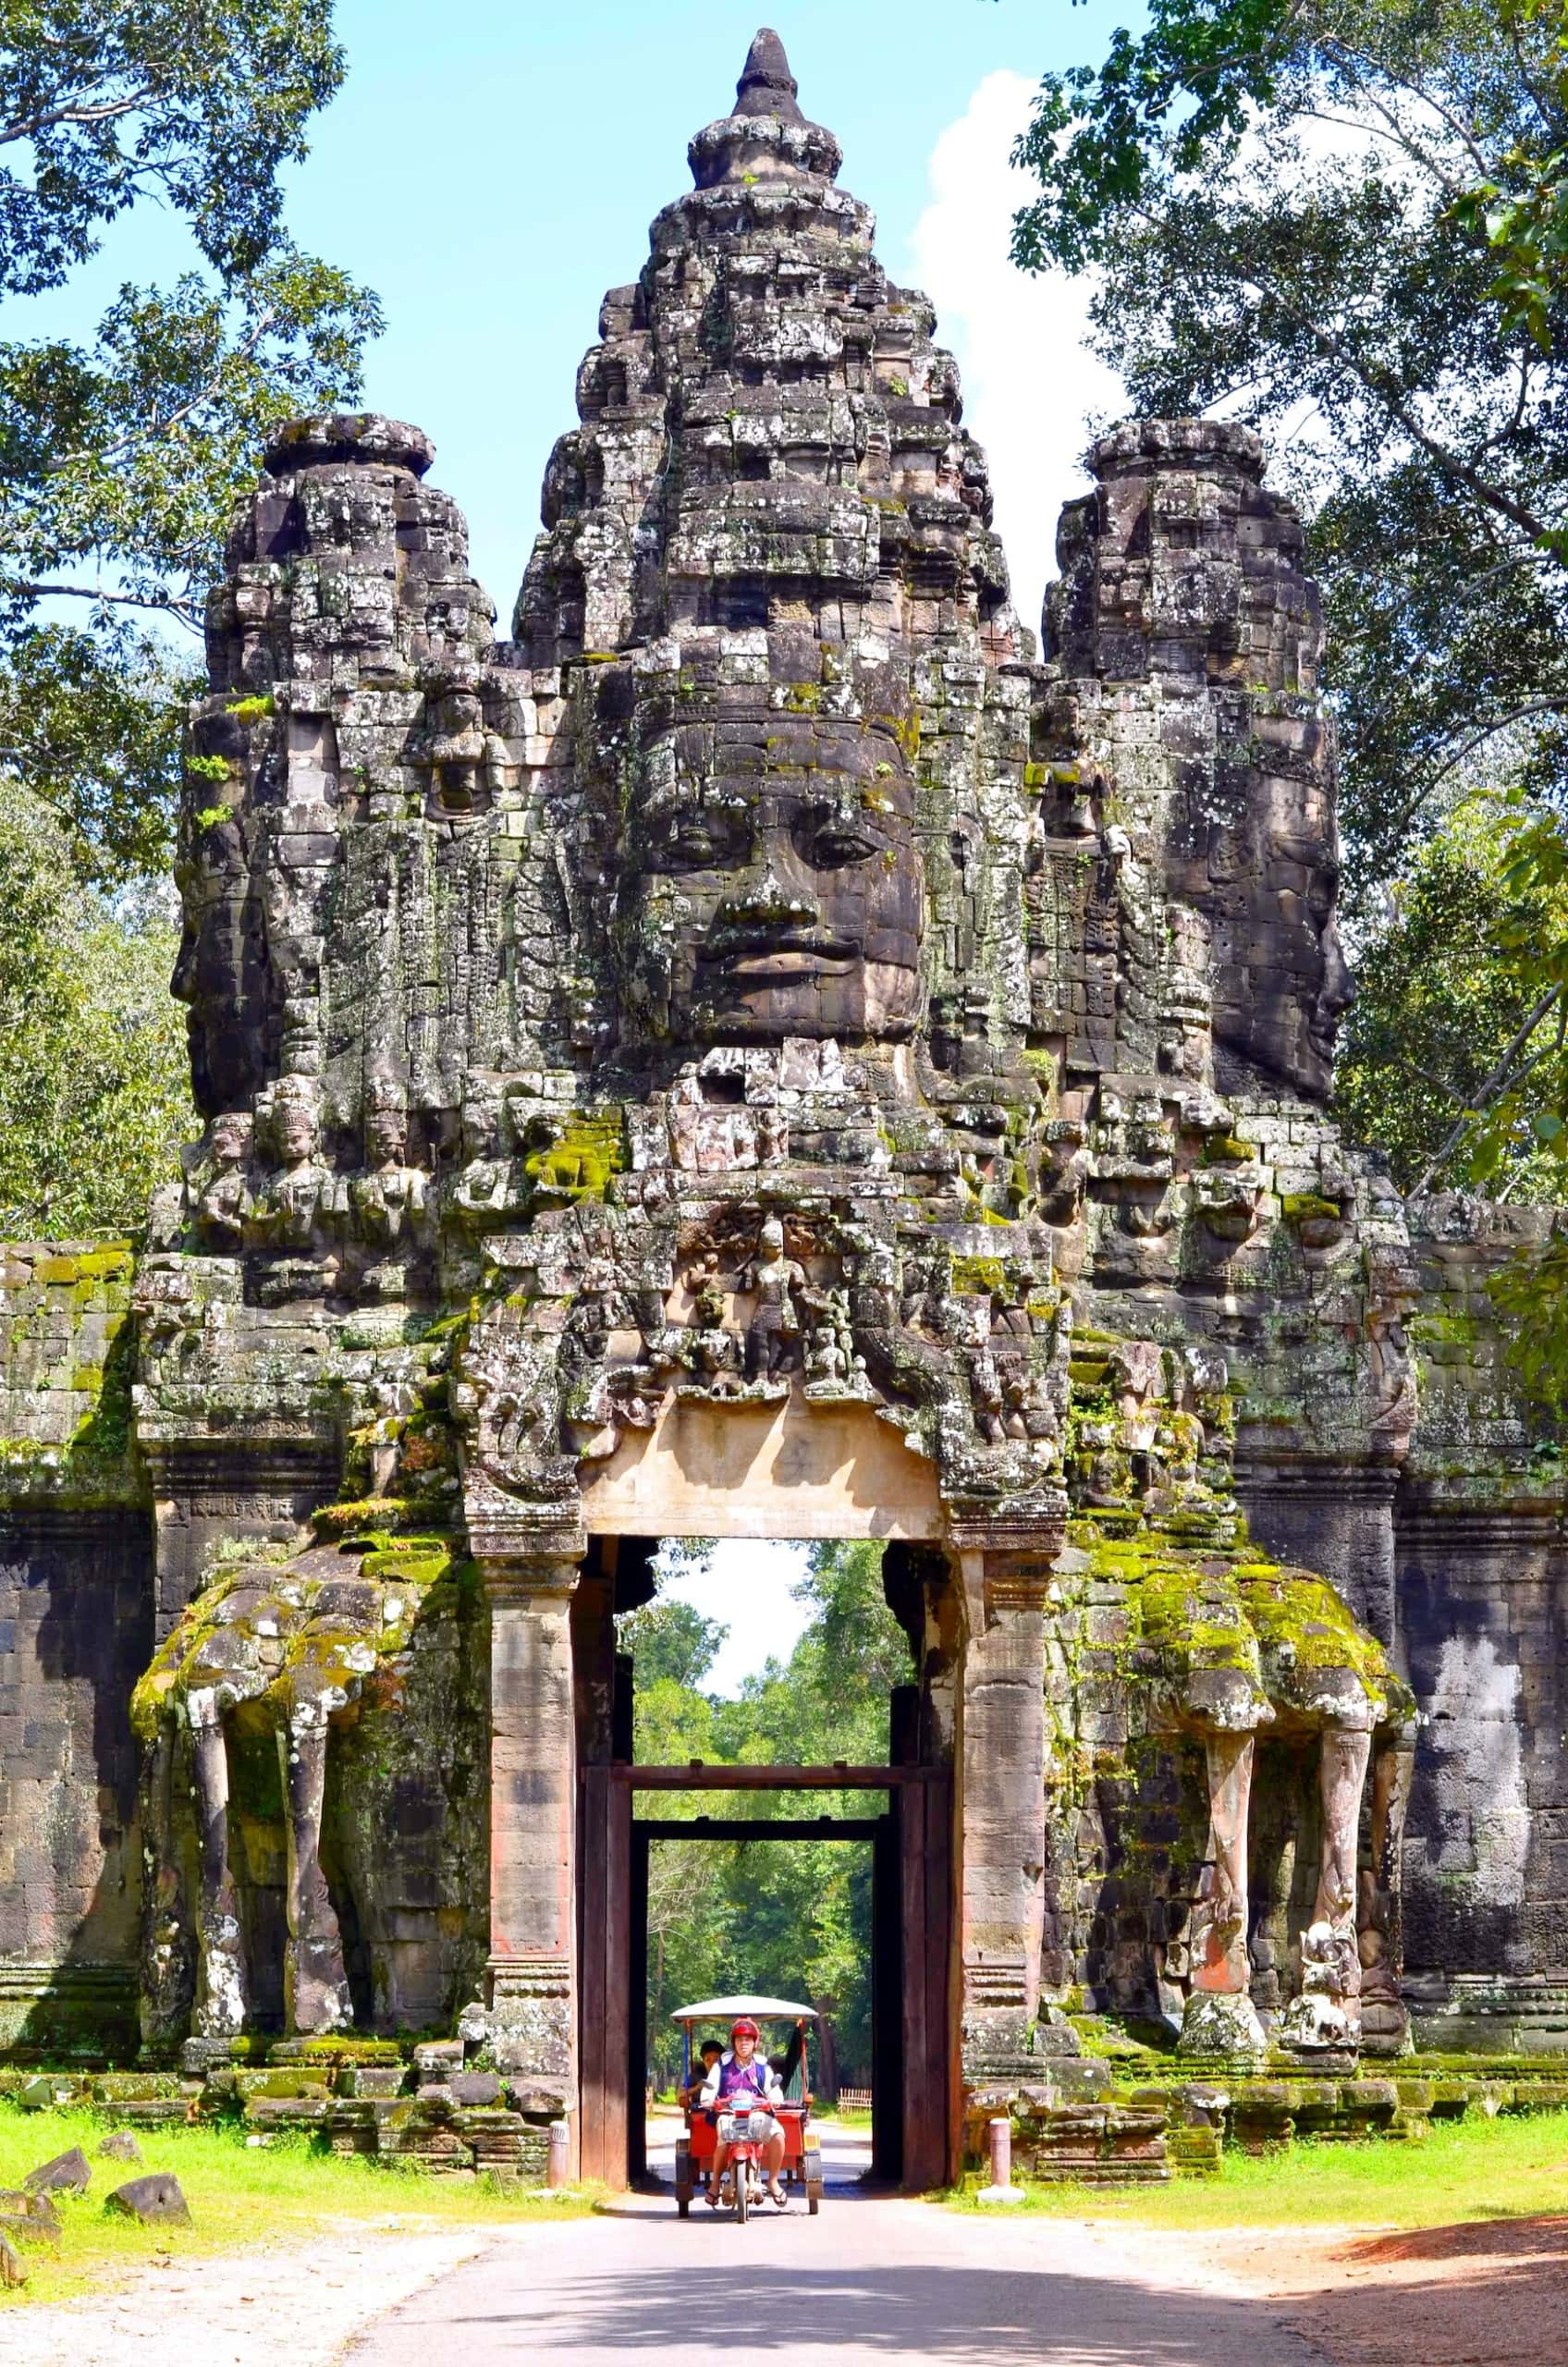 Angkor Wat in Kambodscha, eine der beliebtesten Sehenswürdigkeiten